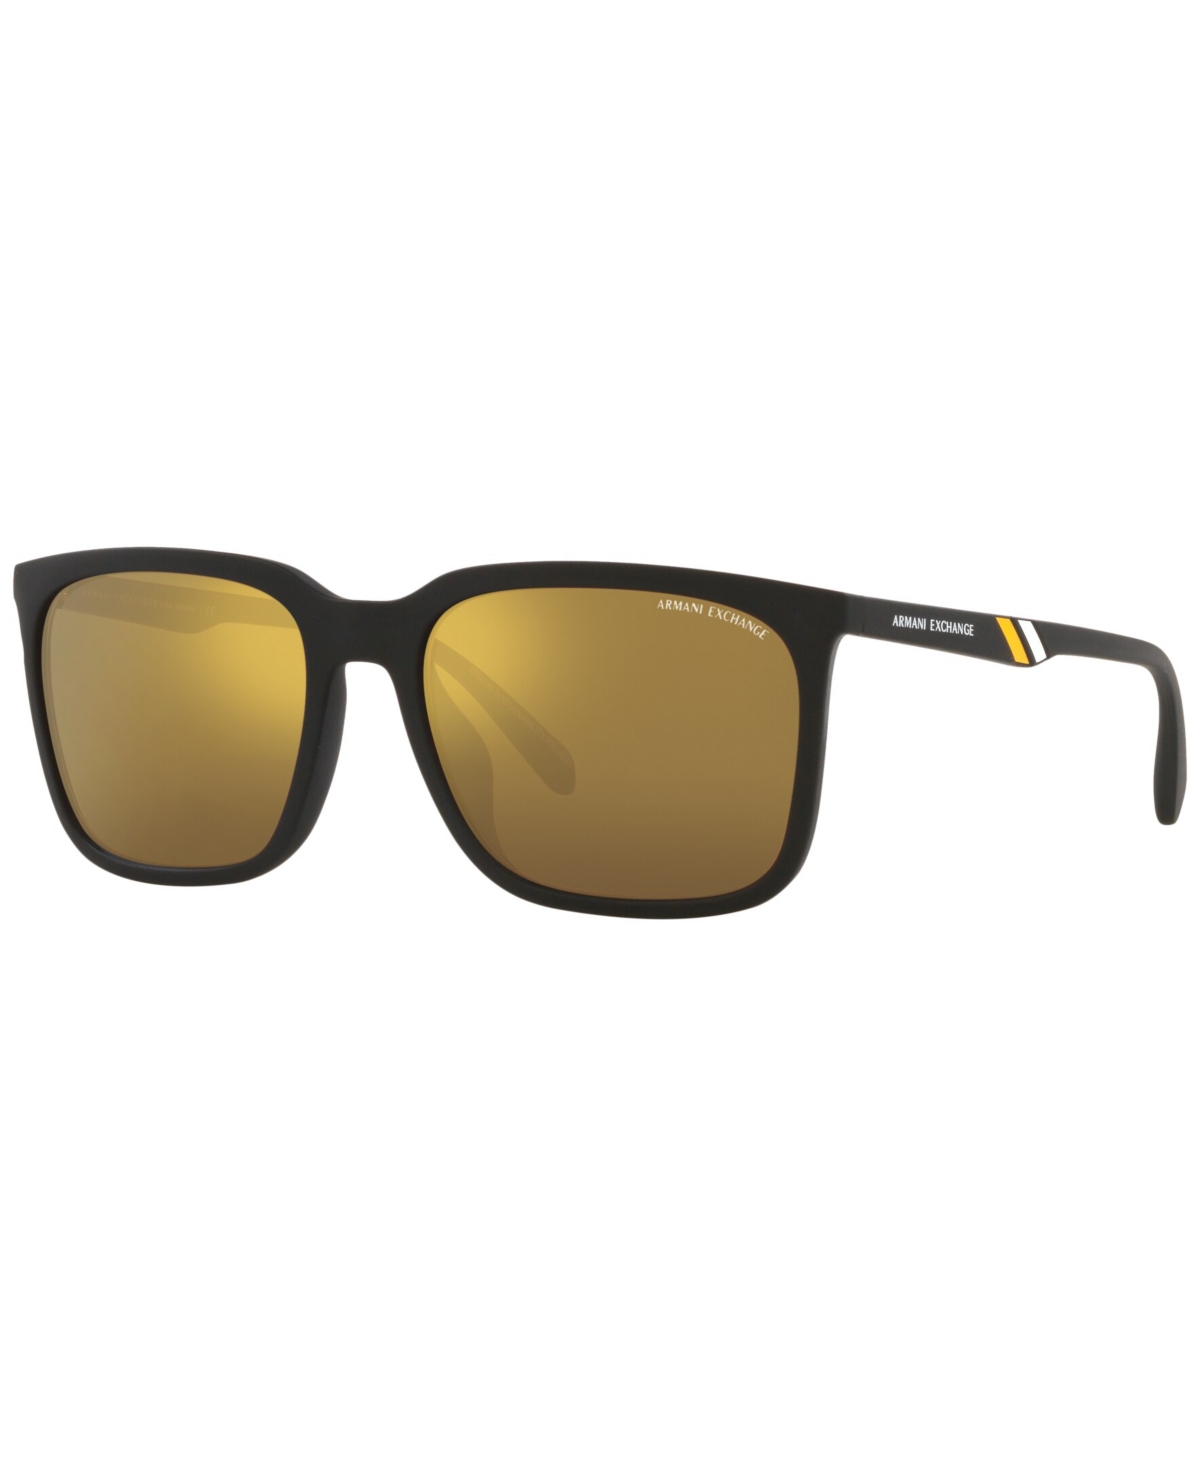 Ax Armani Exchange Men's Sunglasses, Ax4117su 57 In Brown